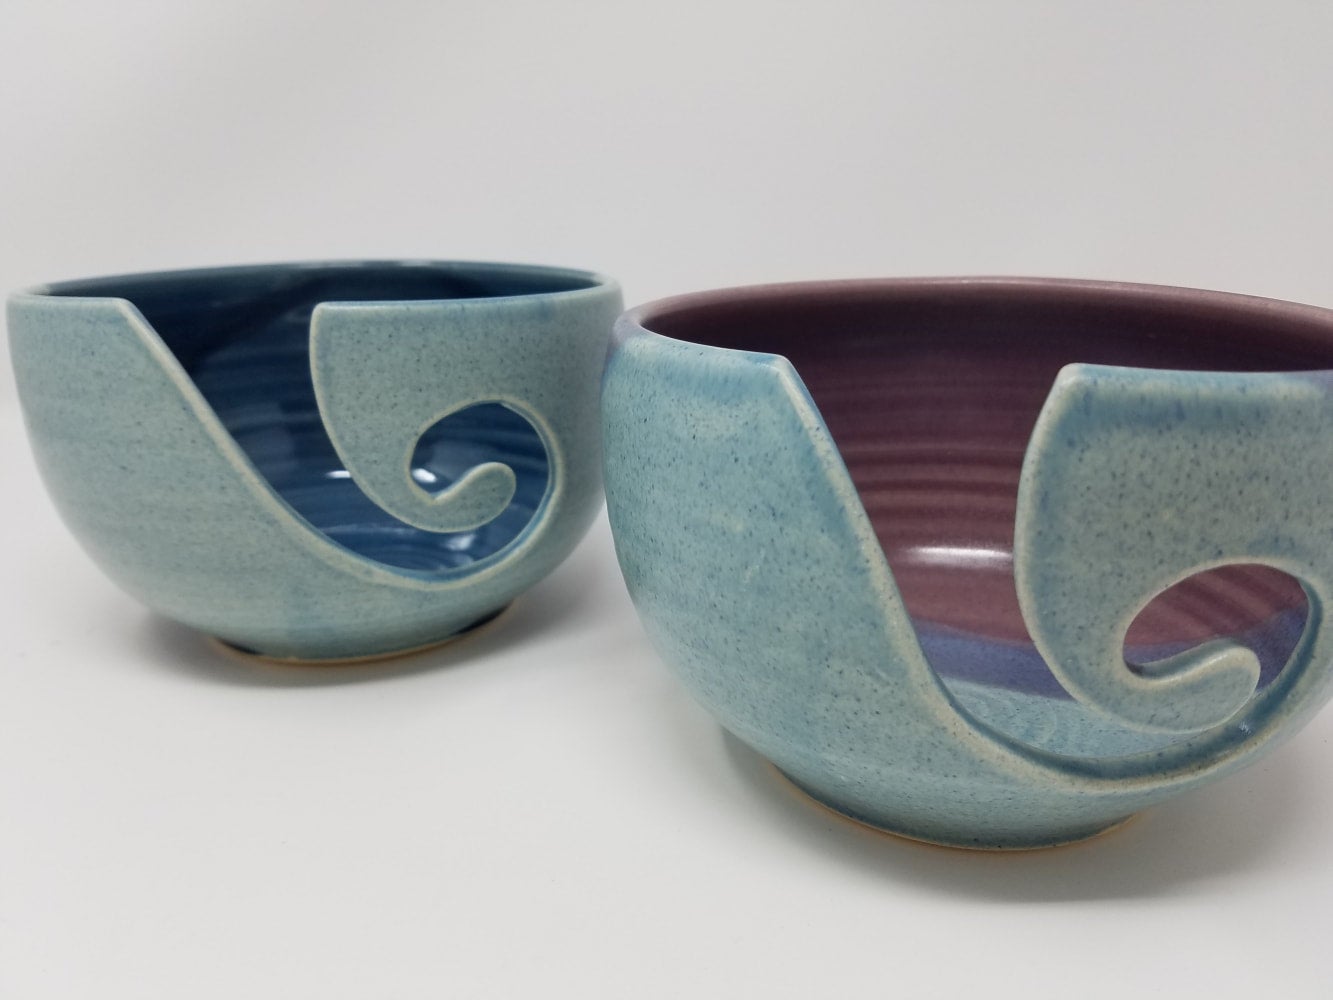 Turquoise Ceramic Yarn Bowl, Yarn Bowl, Knitting Bowl, Crochet Bowl,  Turquoise and White Yarn Bowl, Made to Order 